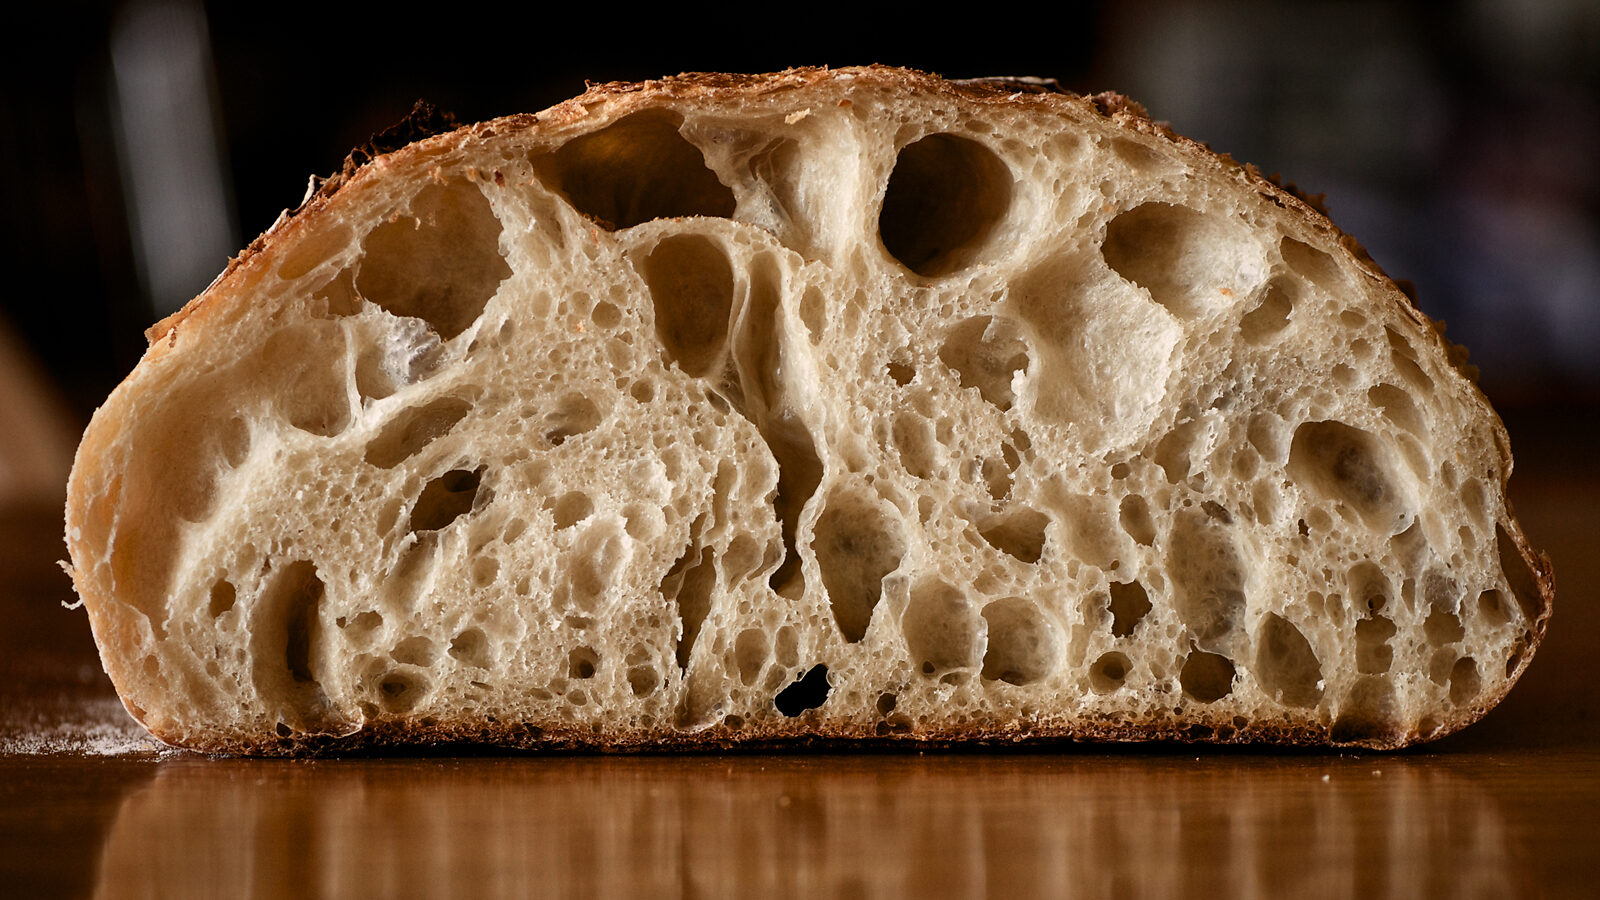 A slice of sourdough bread